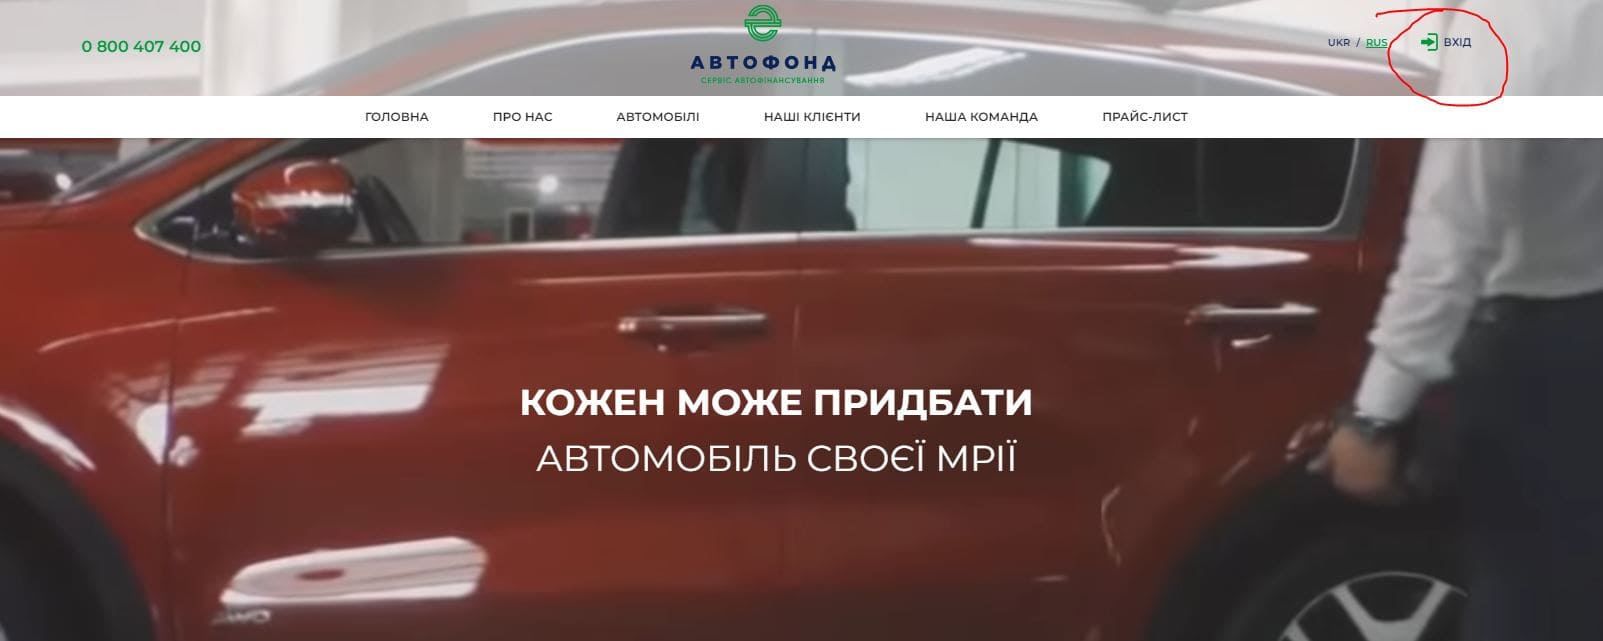 Автофонд (avtofond.com.ua)